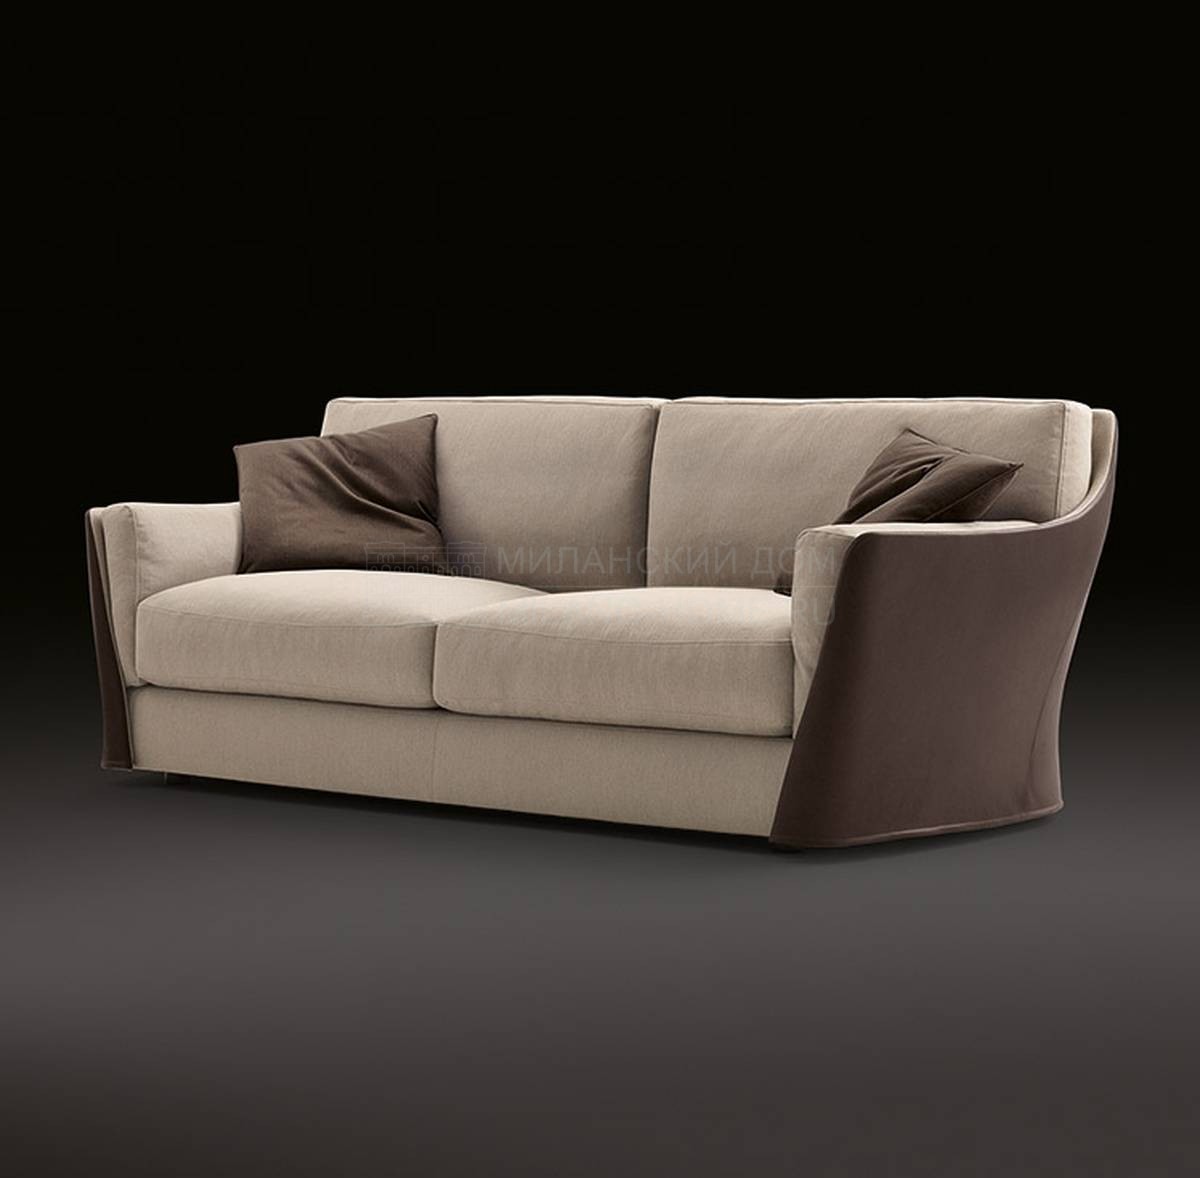 Прямой диван Vittoria / 70510-20-30 из Италии фабрики GIORGETTI